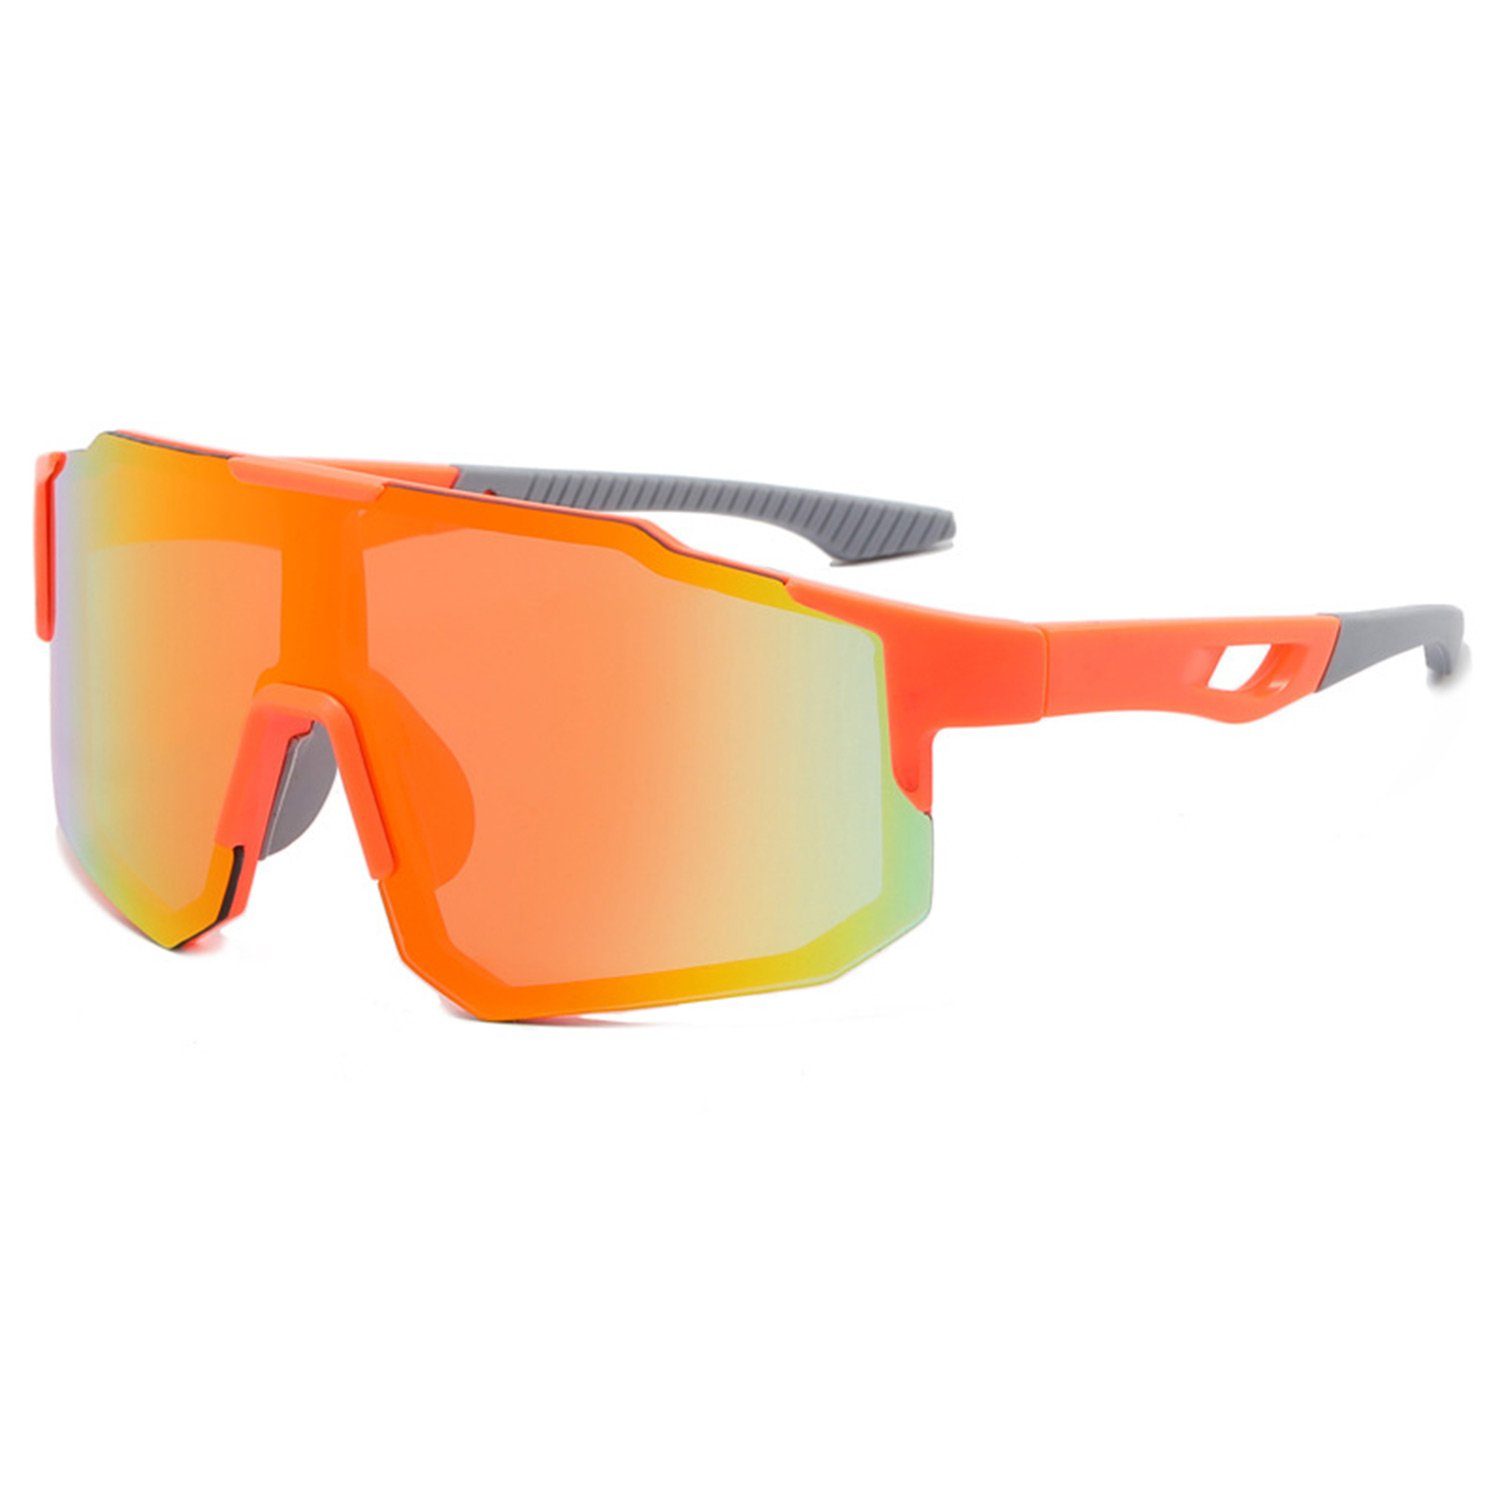 MAGICSHE Fahrradbrille Fahrradbrillen für Herren und Damen, Sport-Sonnenbrillen, Windschutzscheibe, UV-beständige und klare Sicht Brille Orange Rahmen orange Folie | Fahrradbrillen